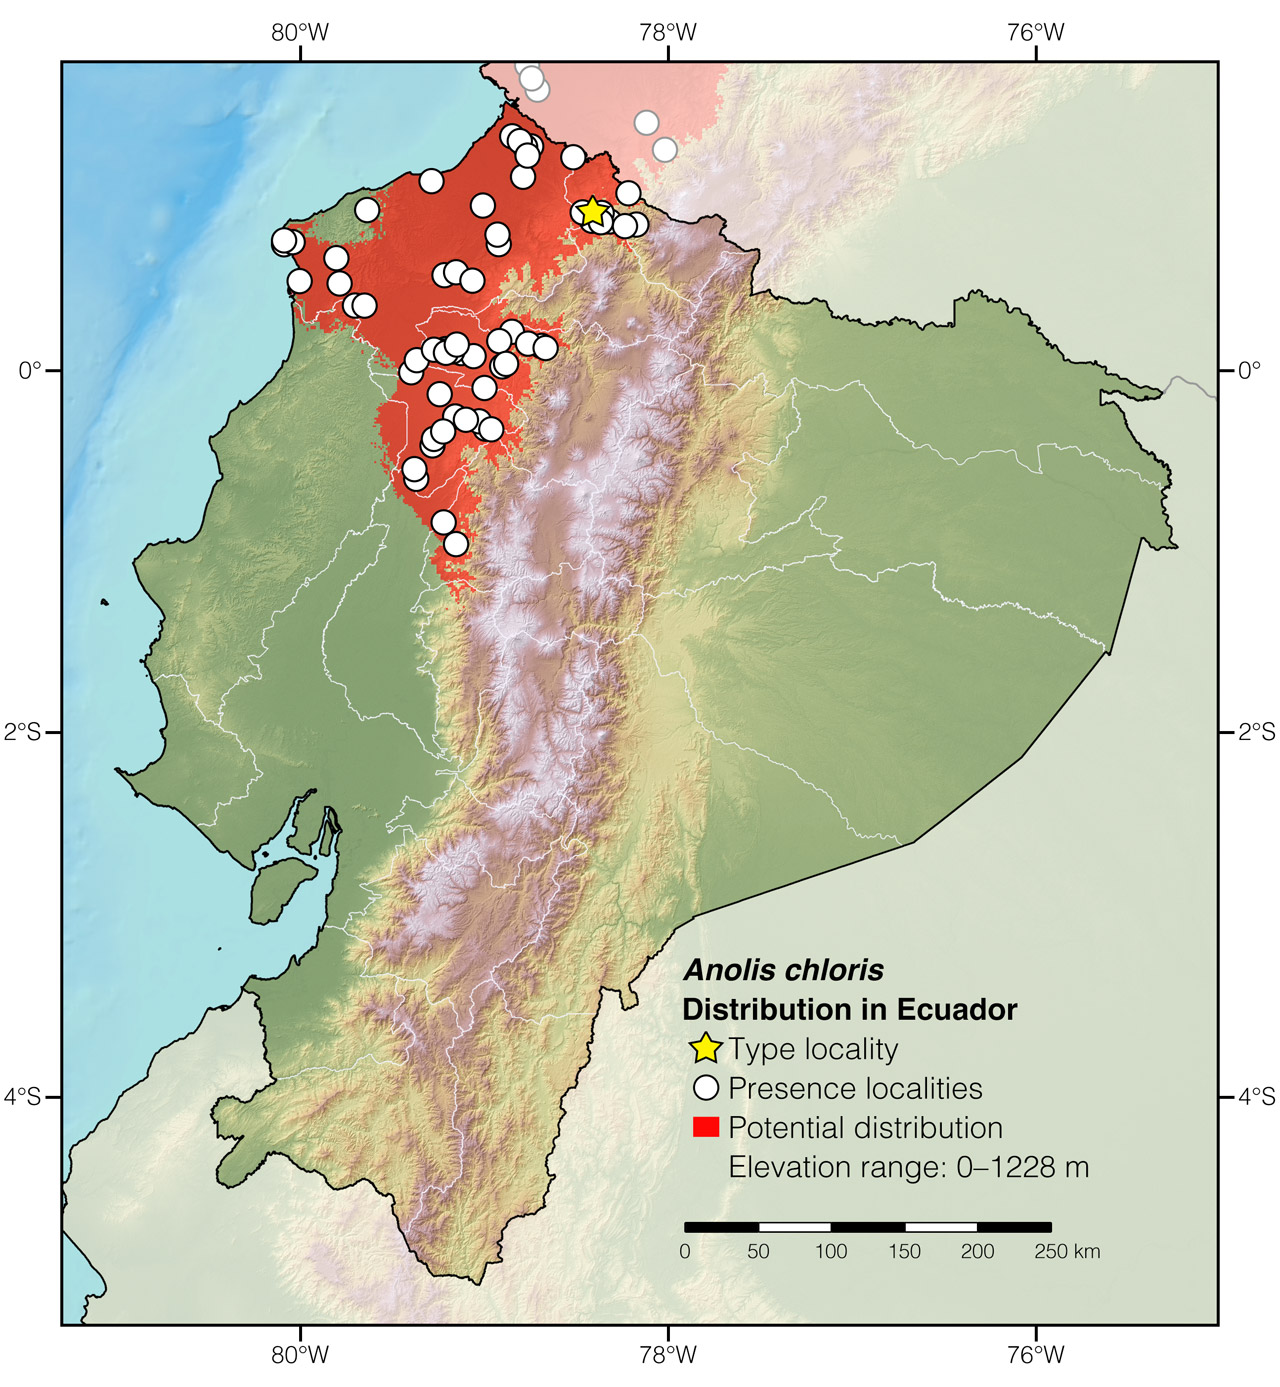 Distribution of Anolis chloris in Ecuador